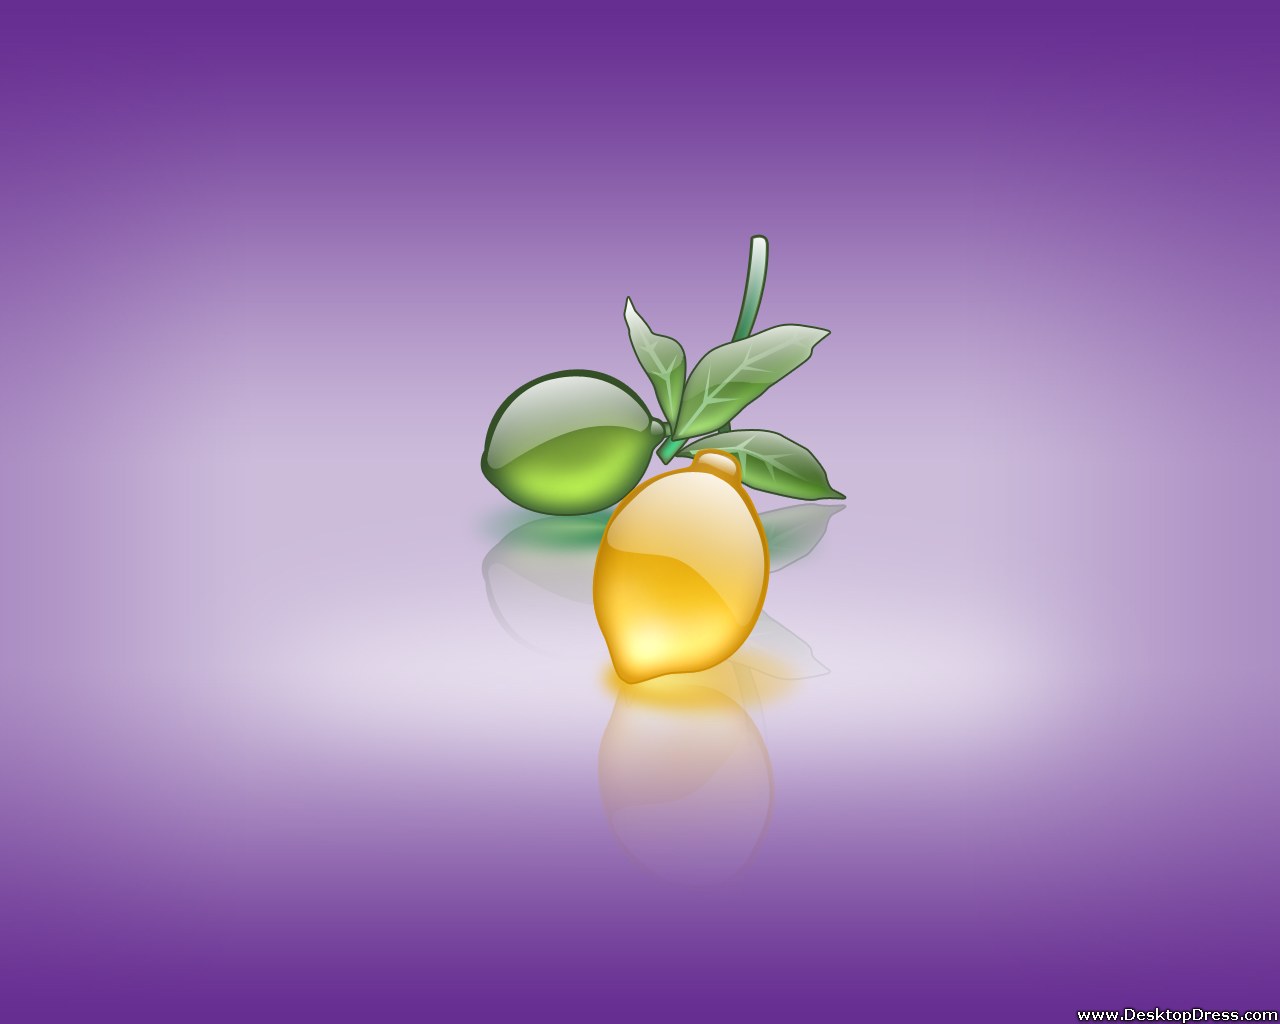 Desktop Wallpaper 3d Background Lemon In Lavender Background